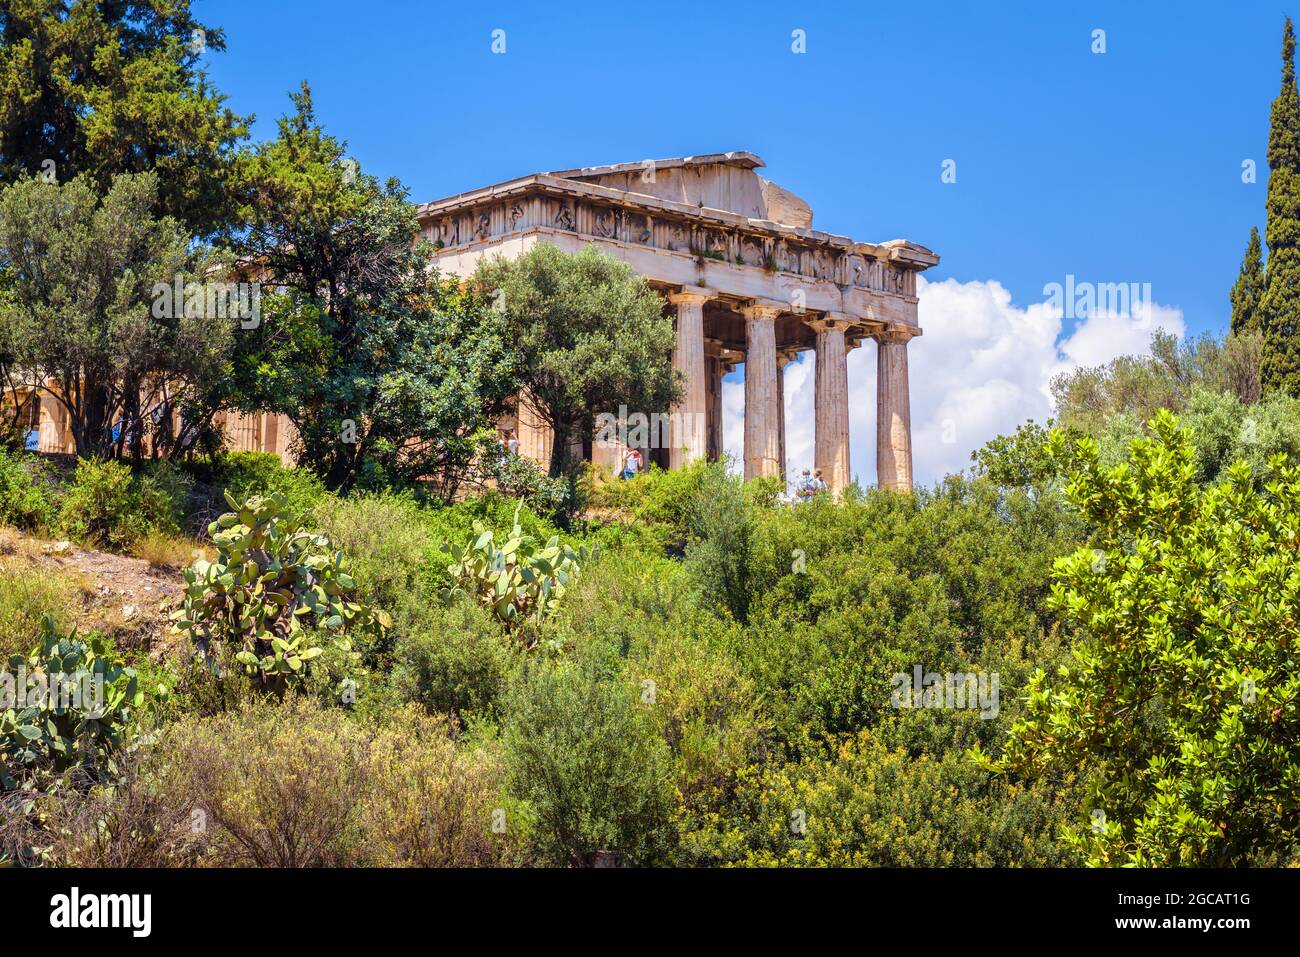 Tempel des Hephaestus in Athen, Griechenland. Landschaftlich schöner Blick auf die altgriechische Agora im Sommer. Dieser Ort ist berühmte Touristenattraktion von Athen. Schöne Landschaft mit Stockfoto